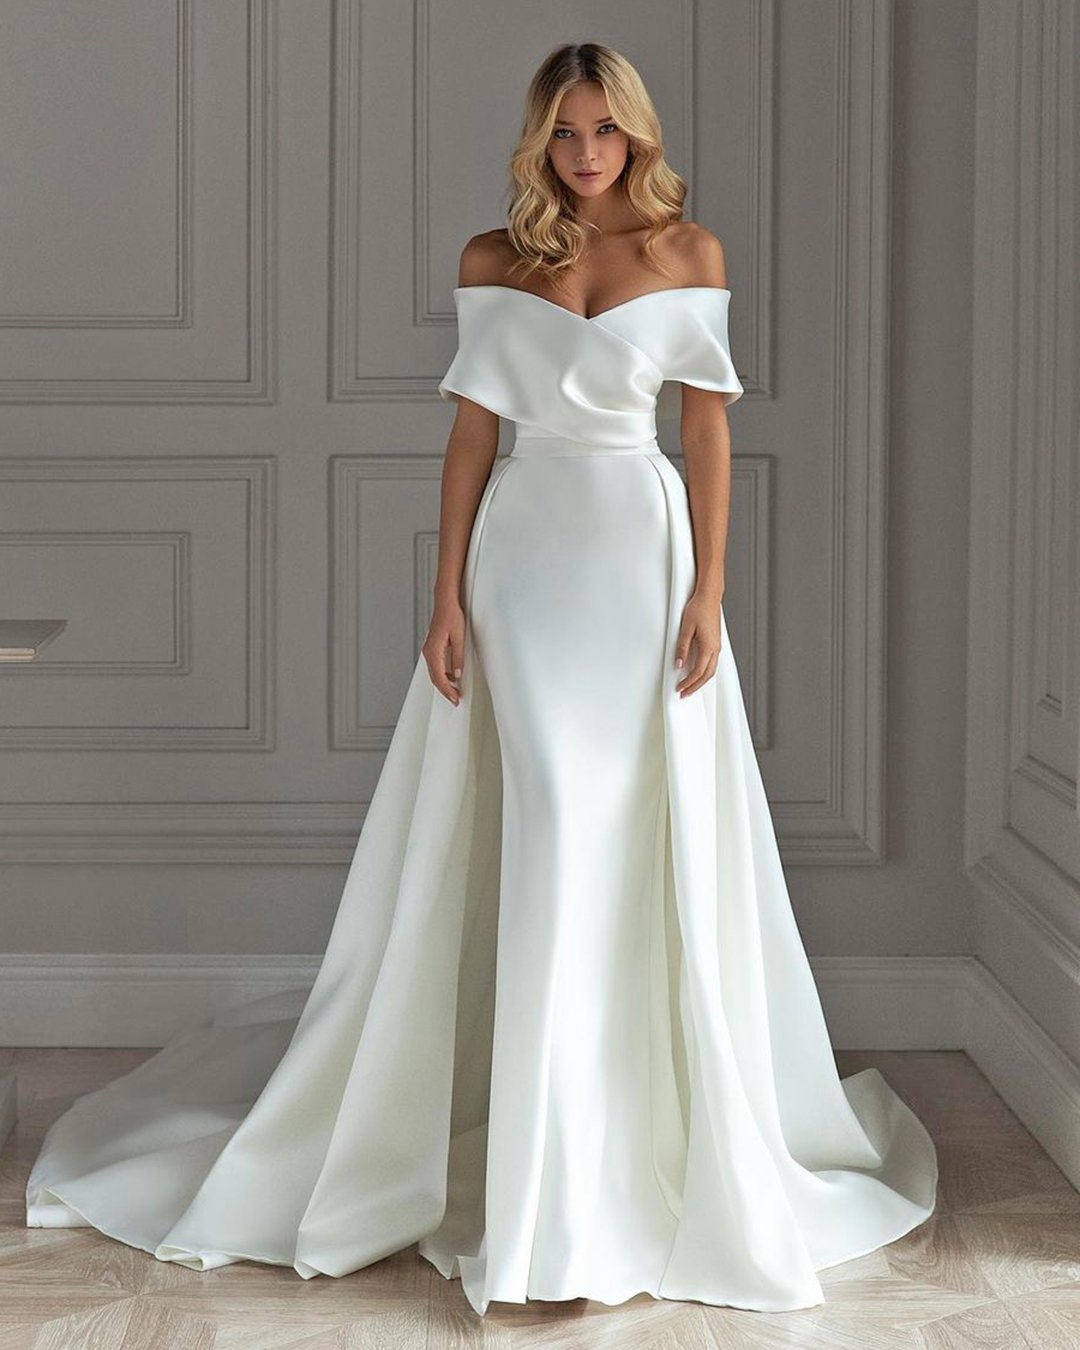 bridal dresses simple strapless off the shoulder neckline with overskirt evalendel